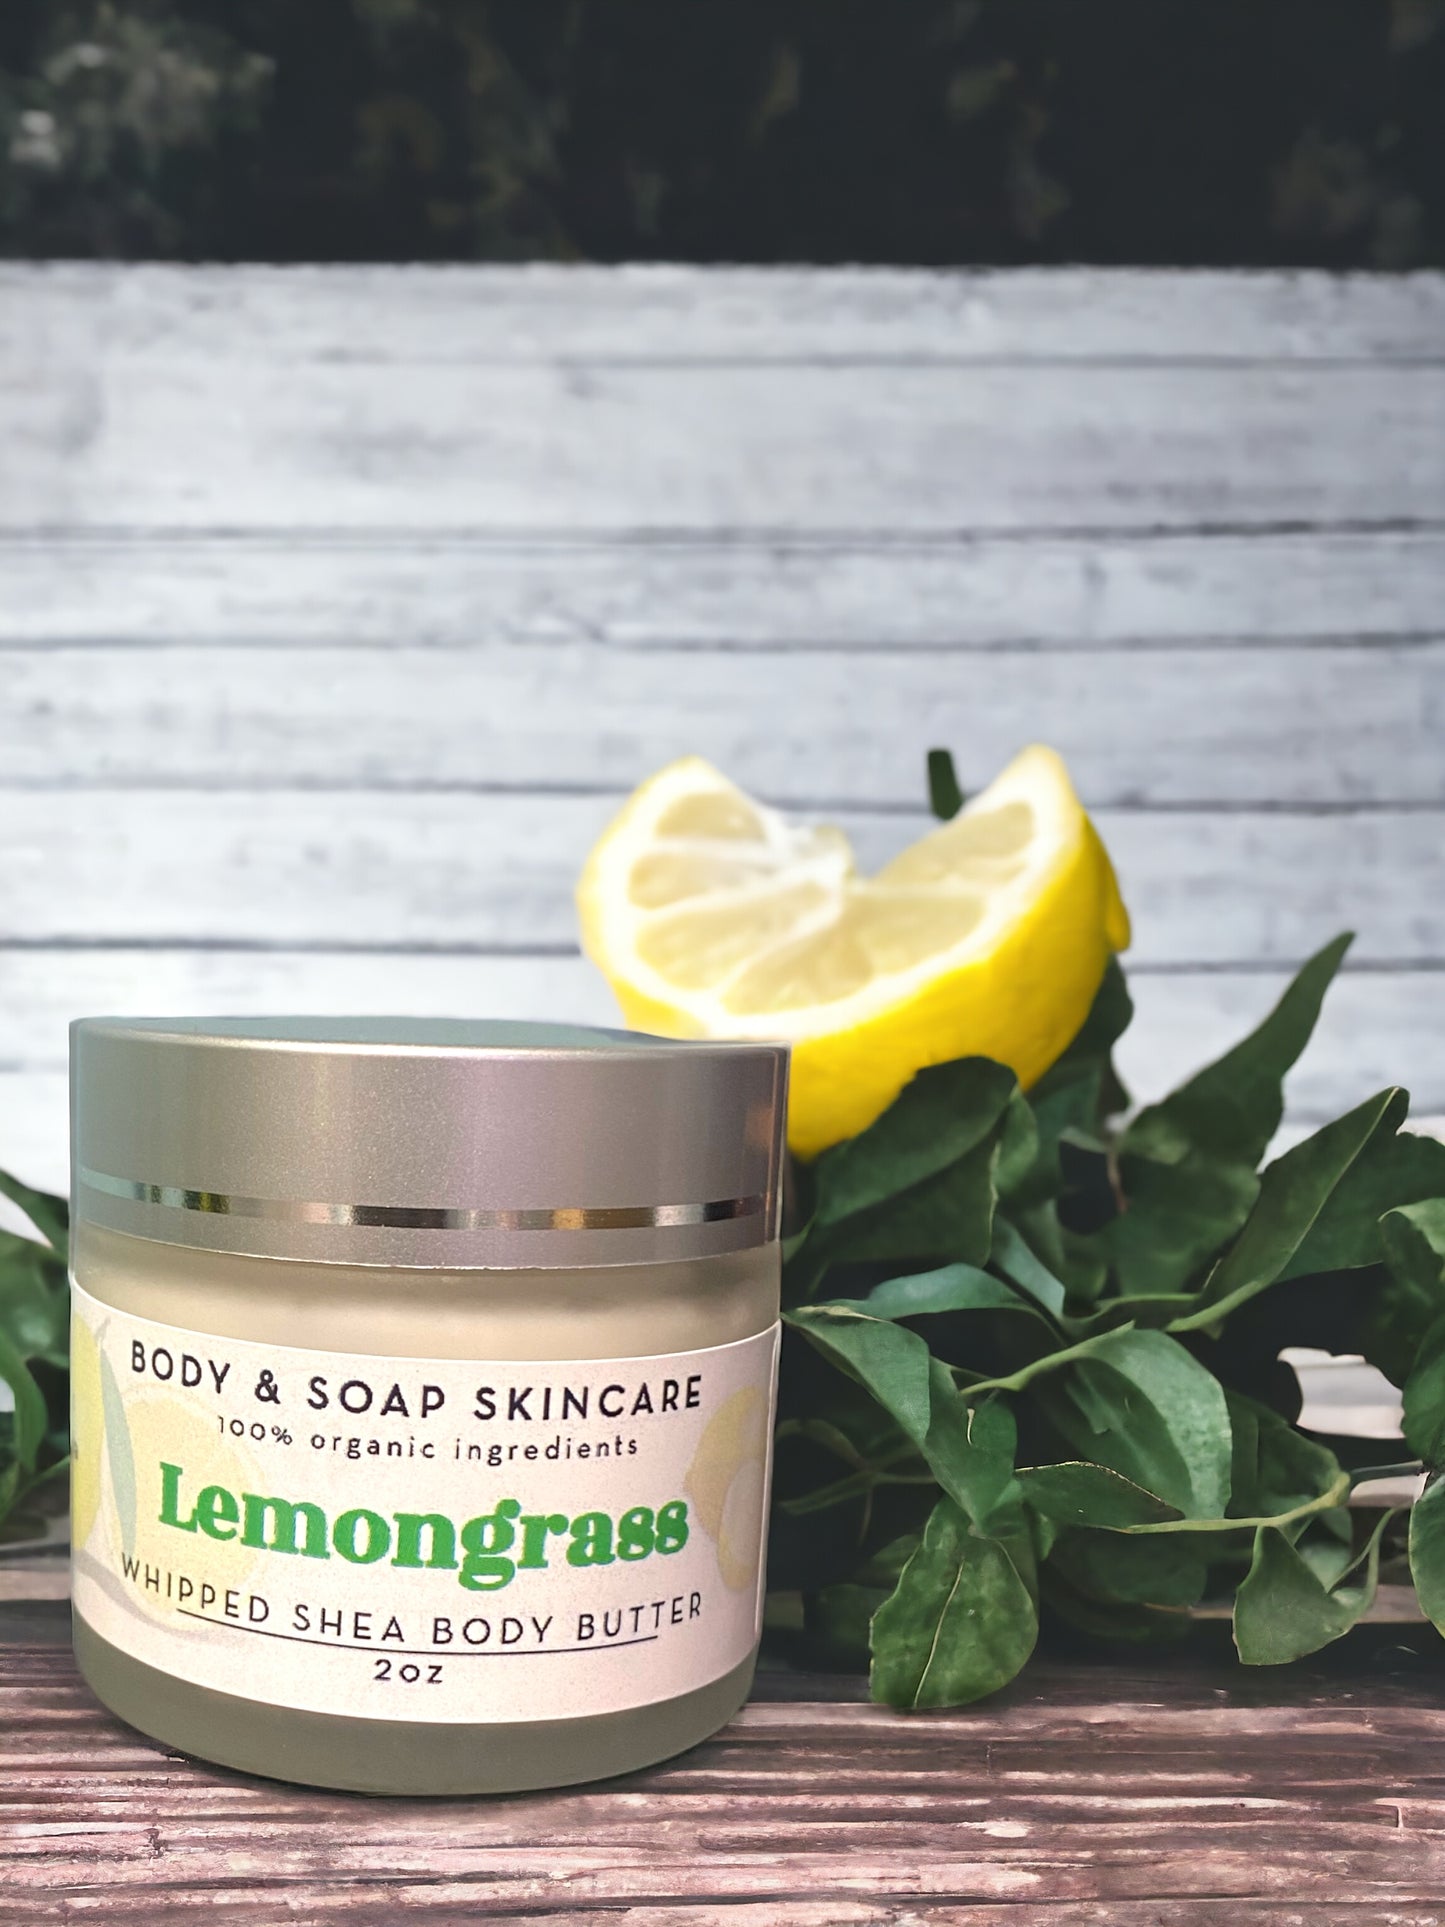 Whipped Shea Body Butter: Lemongrass - Body & Soap Skincare